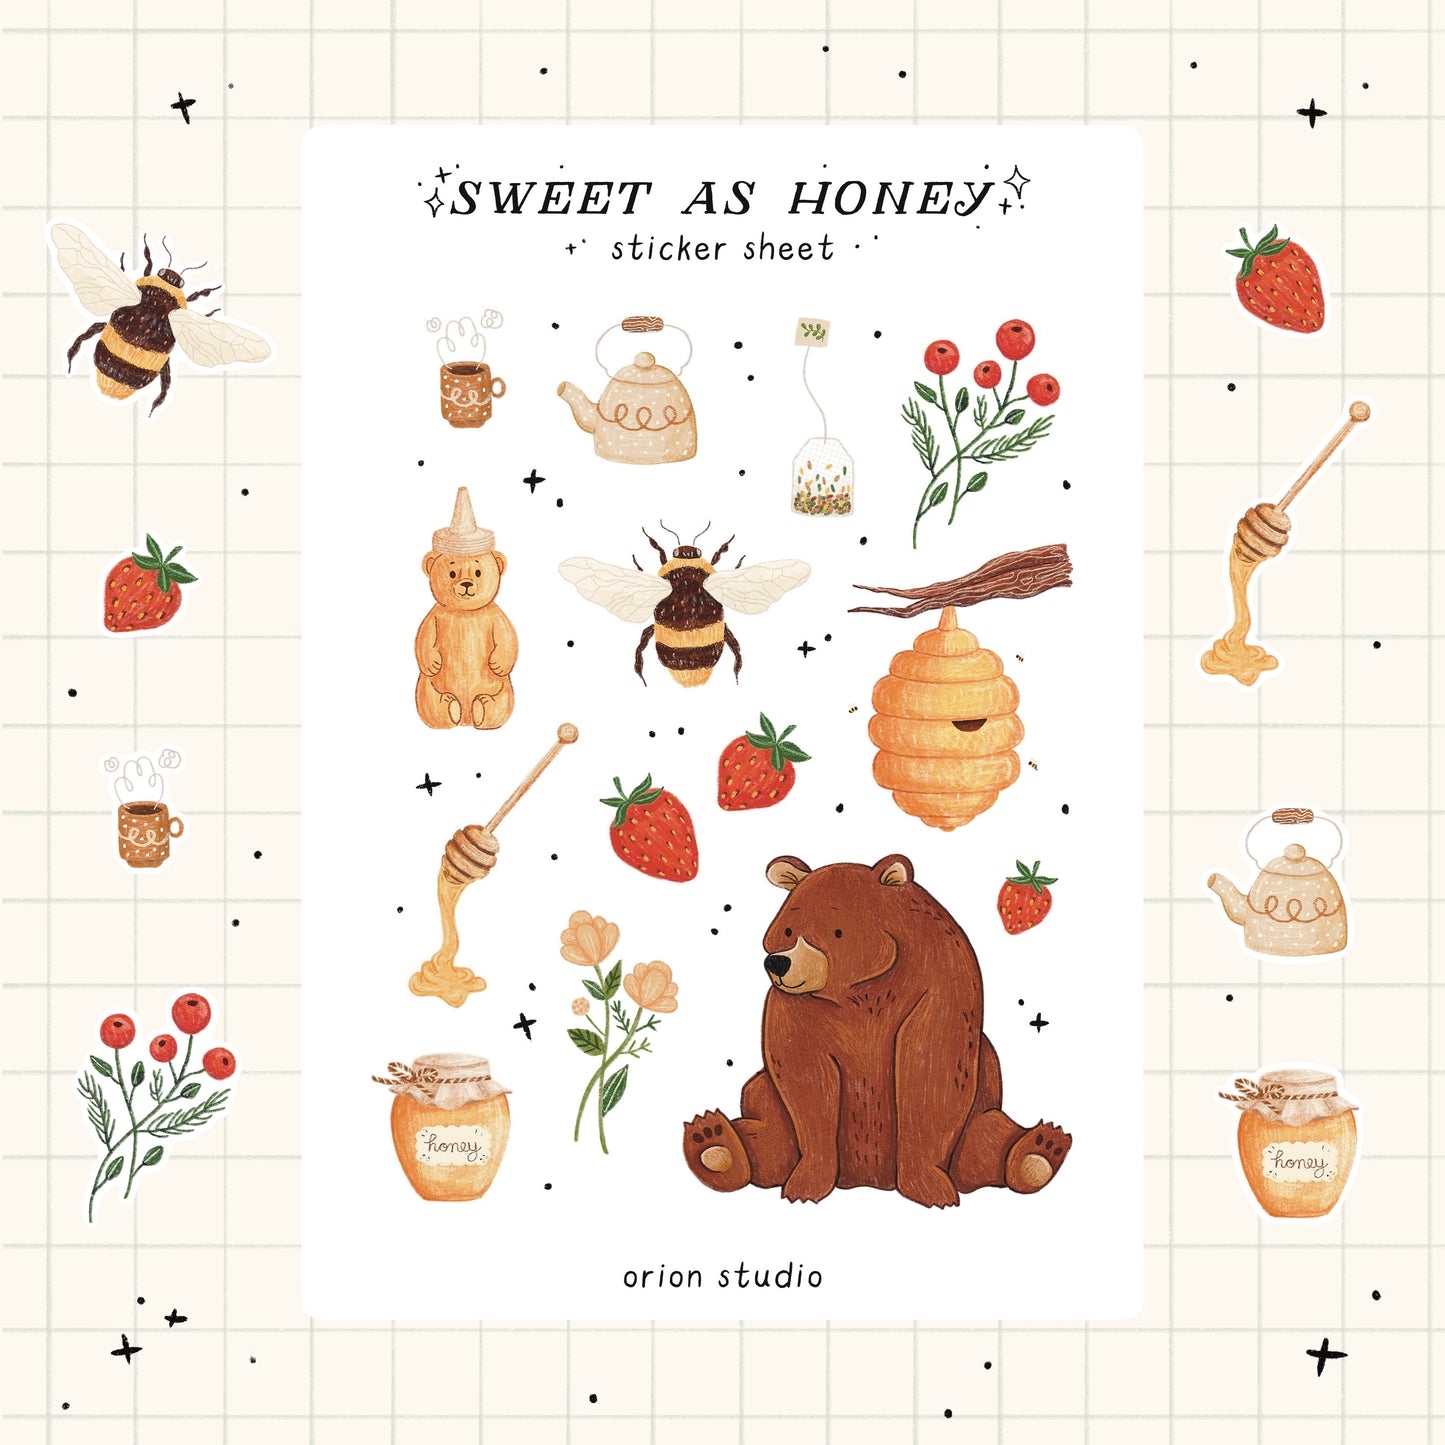 'SWEET AS HONEY' sticker sheet